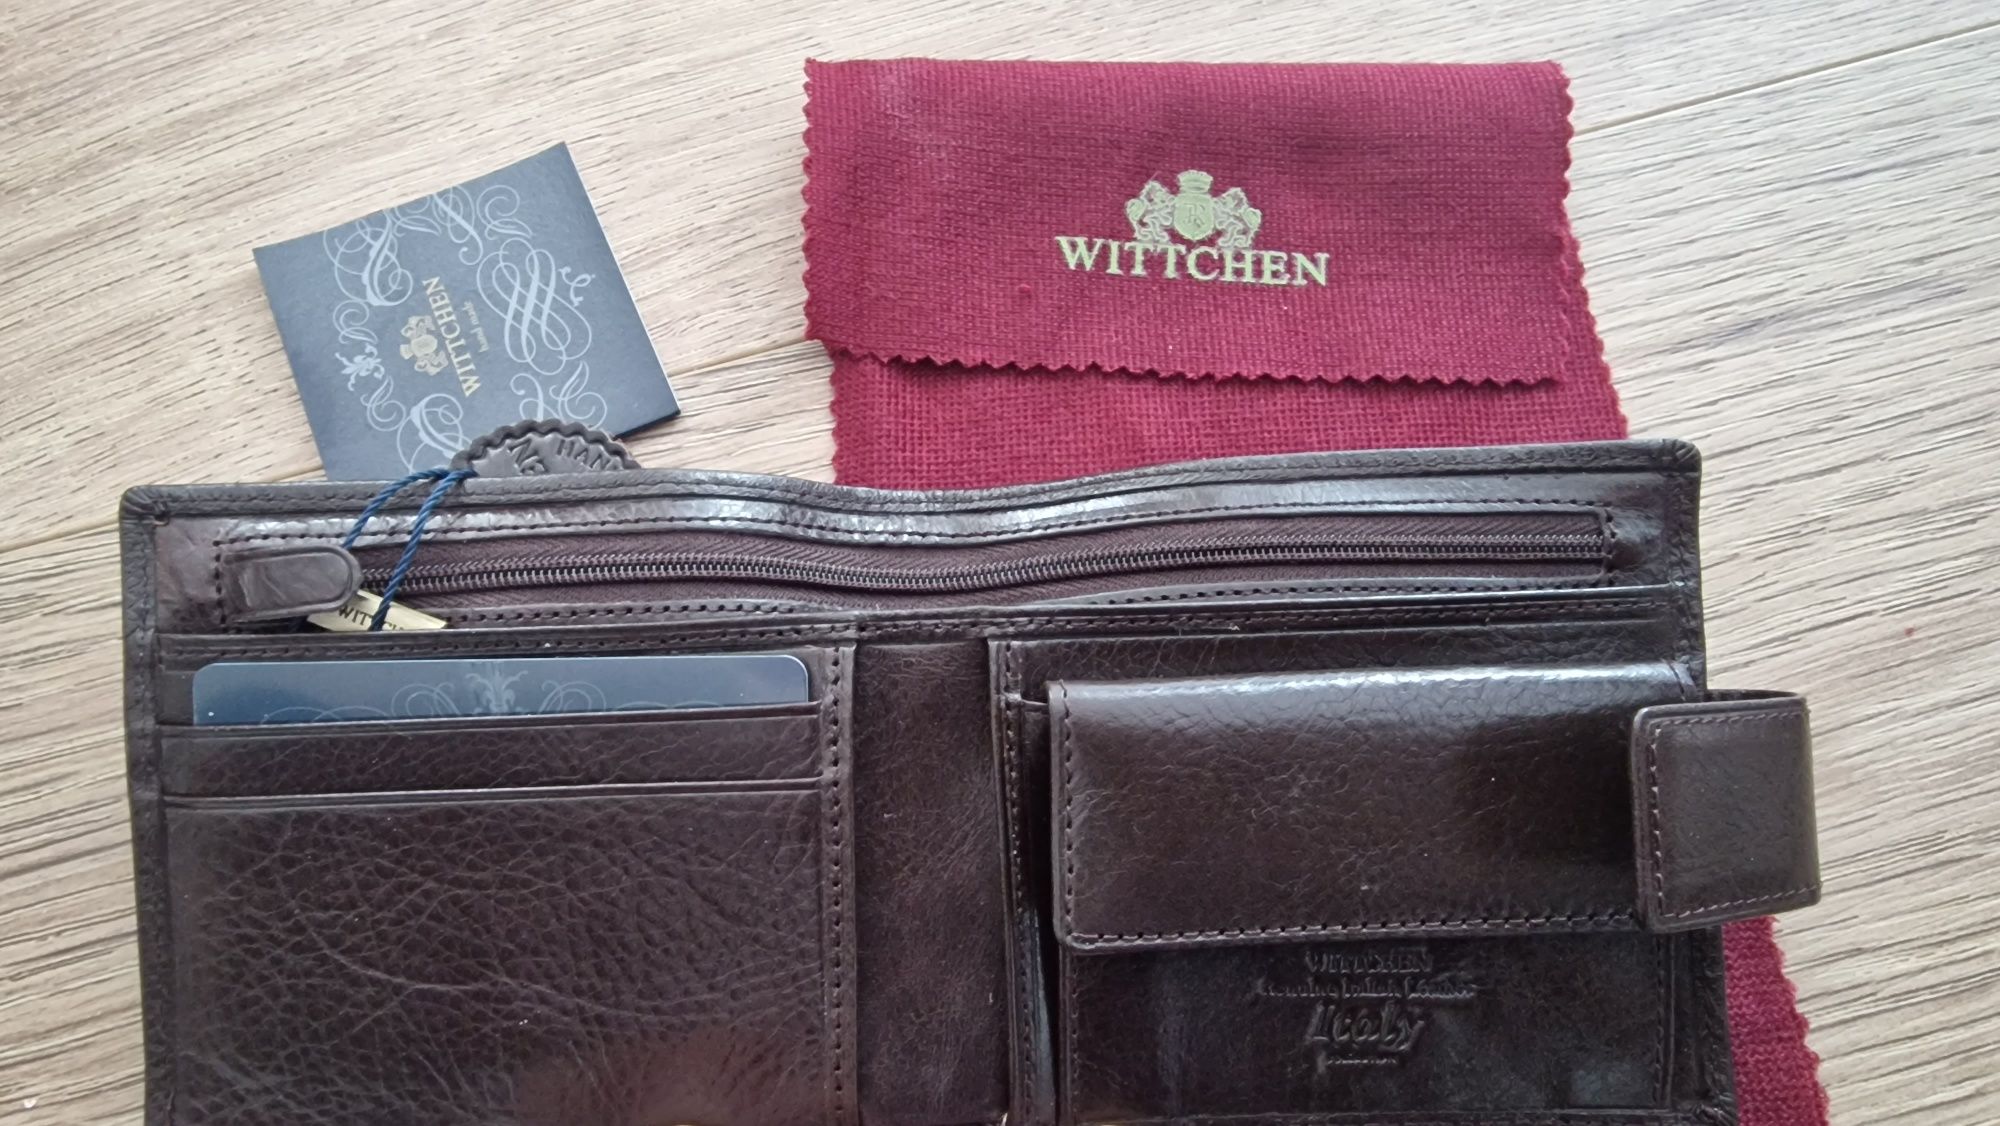 Wittchen Italy wallet - brązowy portfel skórzany